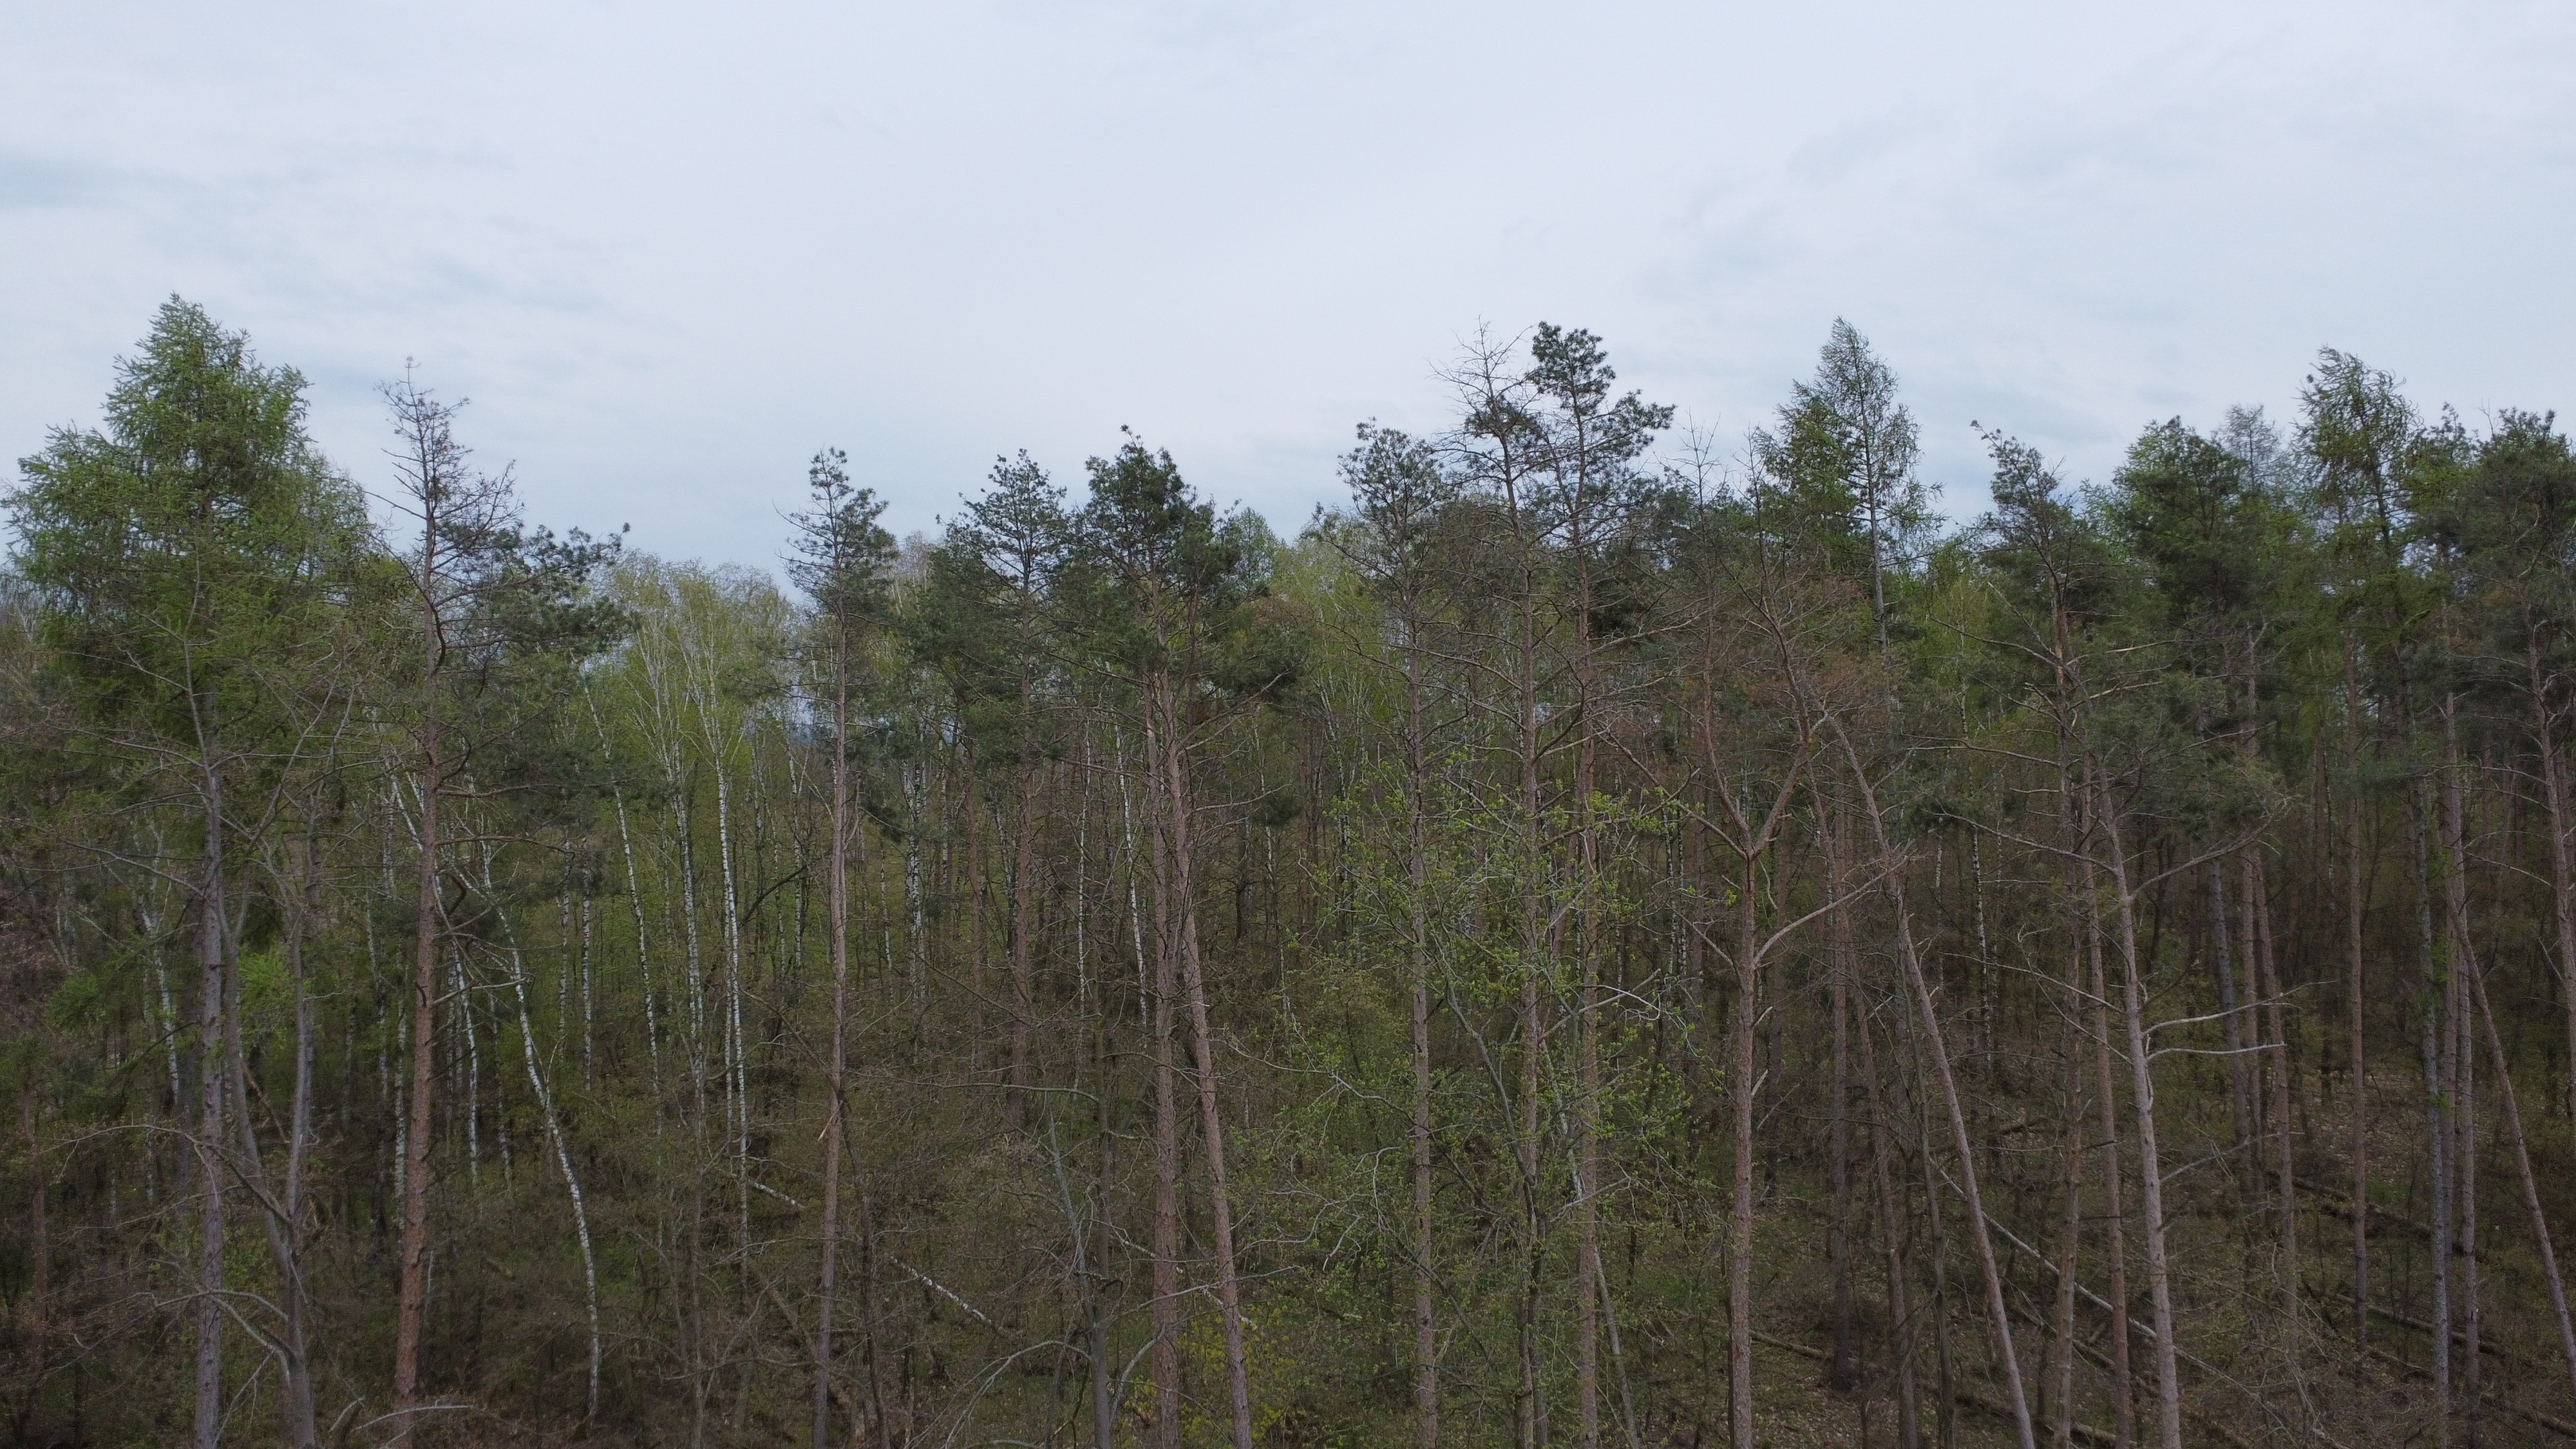 Zdjęcie przedstawia drzewa zamierające w wyniku działania szkodników wtórnych. Fot. D. Cichoń